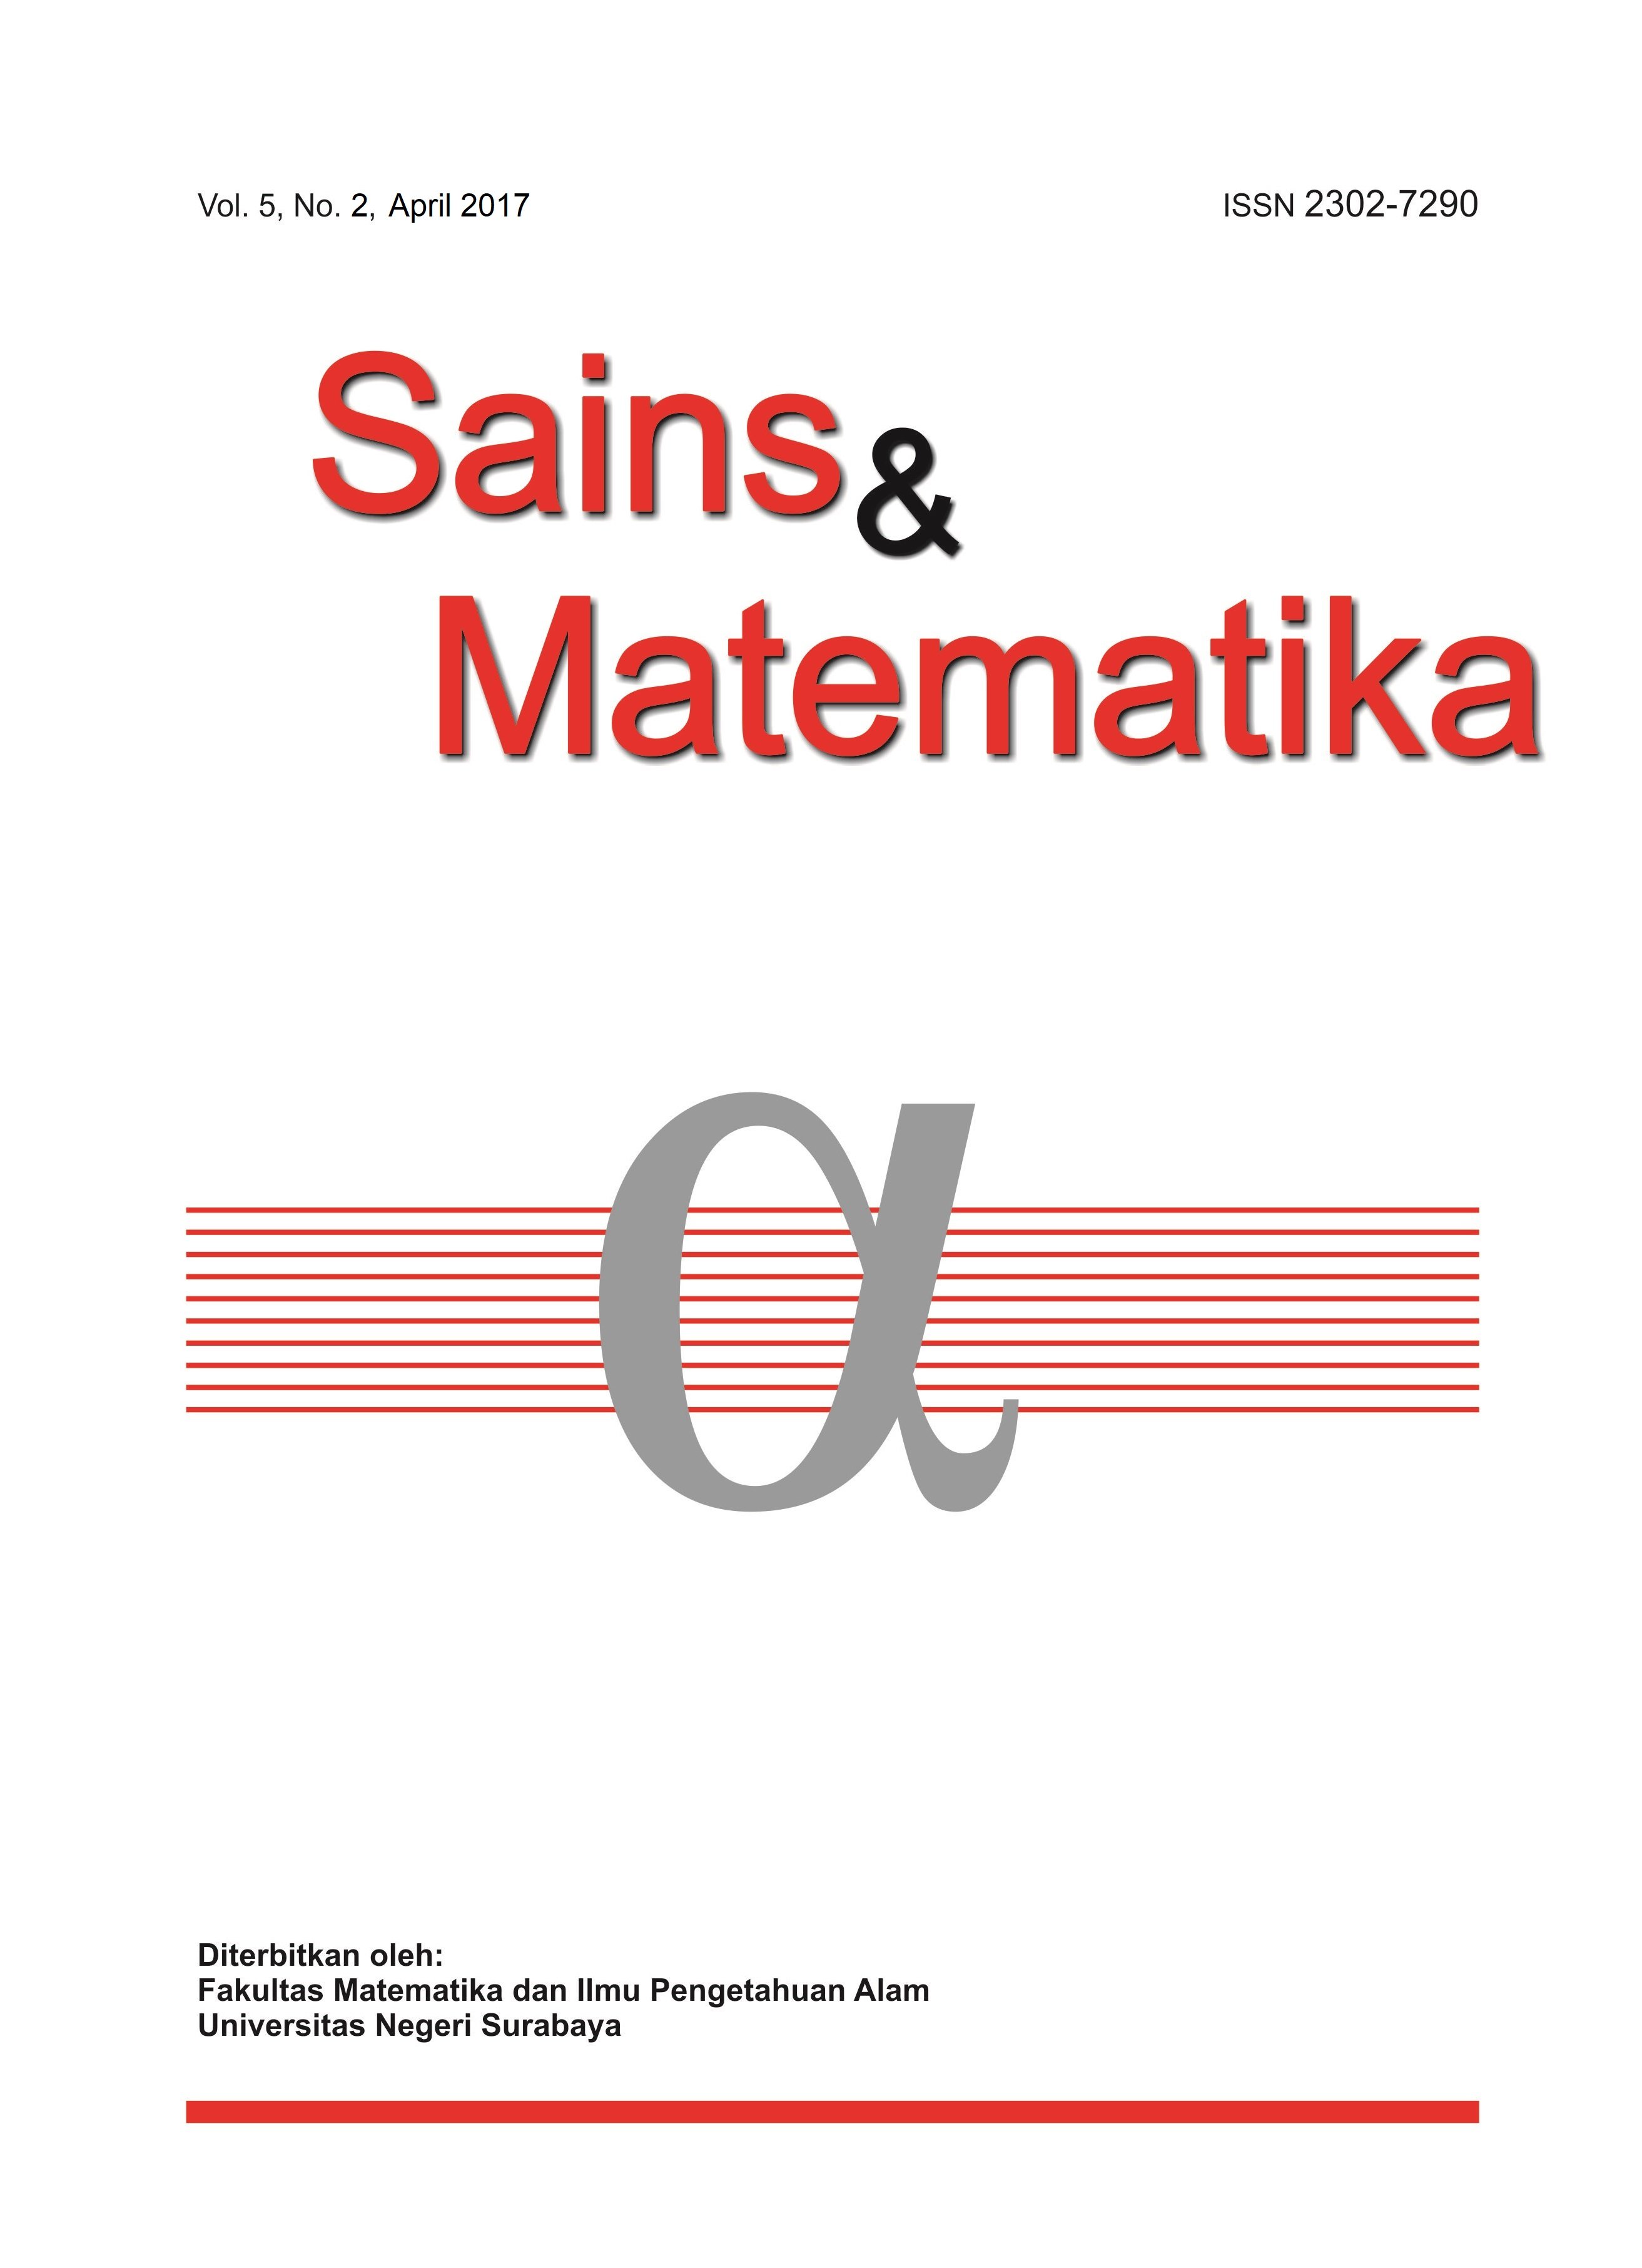 					View Vol. 5 No. 2 (2017): April, Sains & Matematika
				